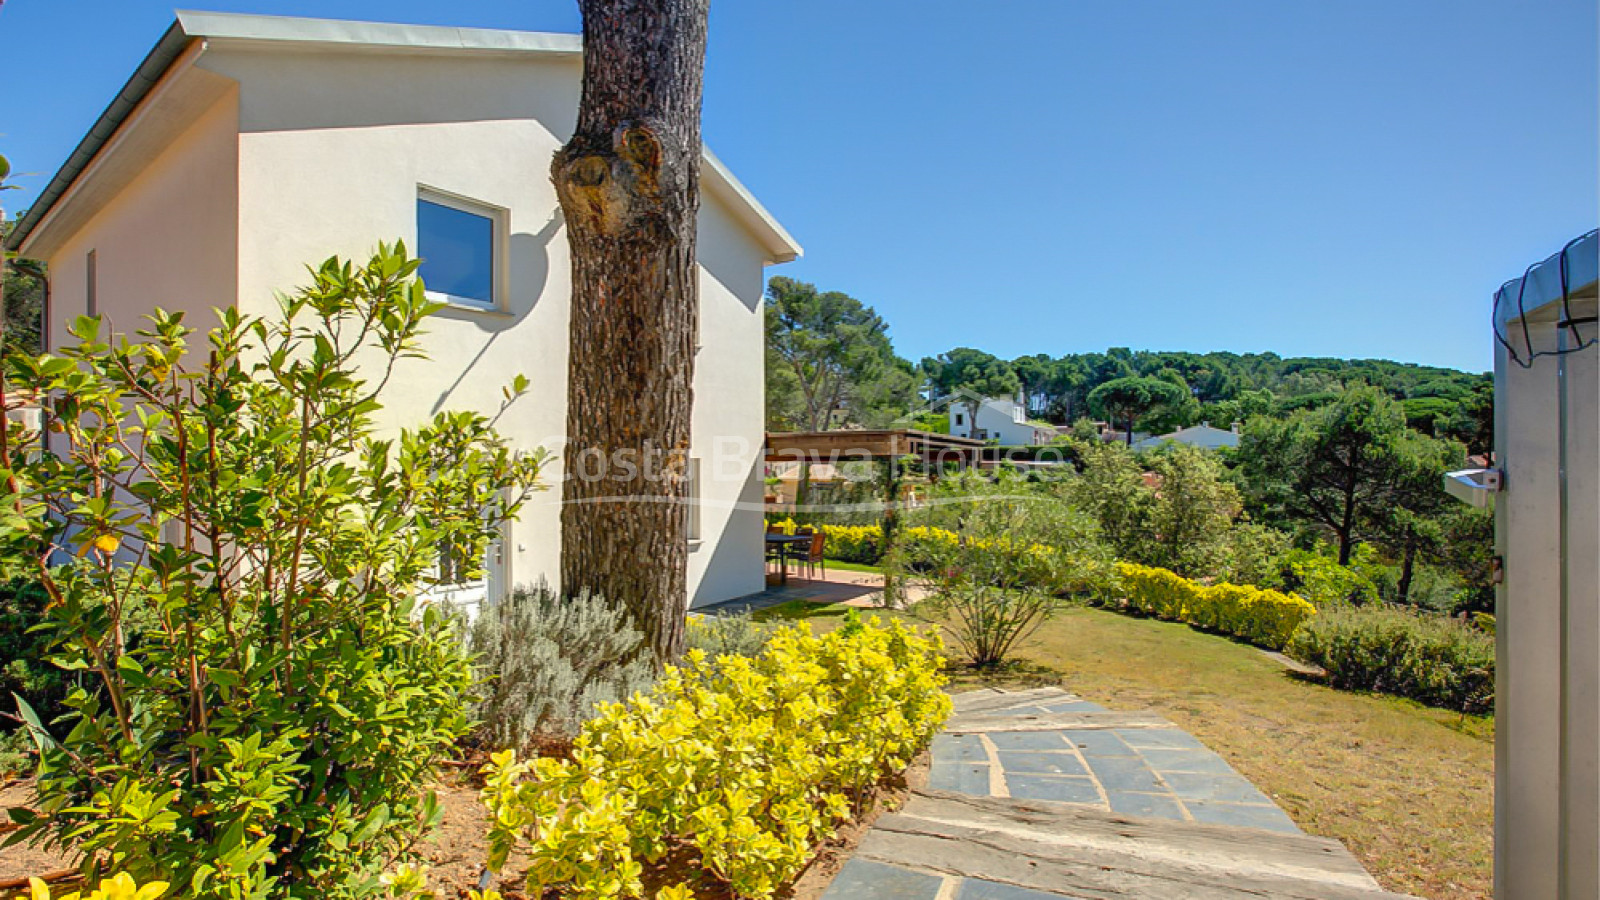 Casa en venta en Tamariu con 1600 m2 de terreno y jardín con piscina